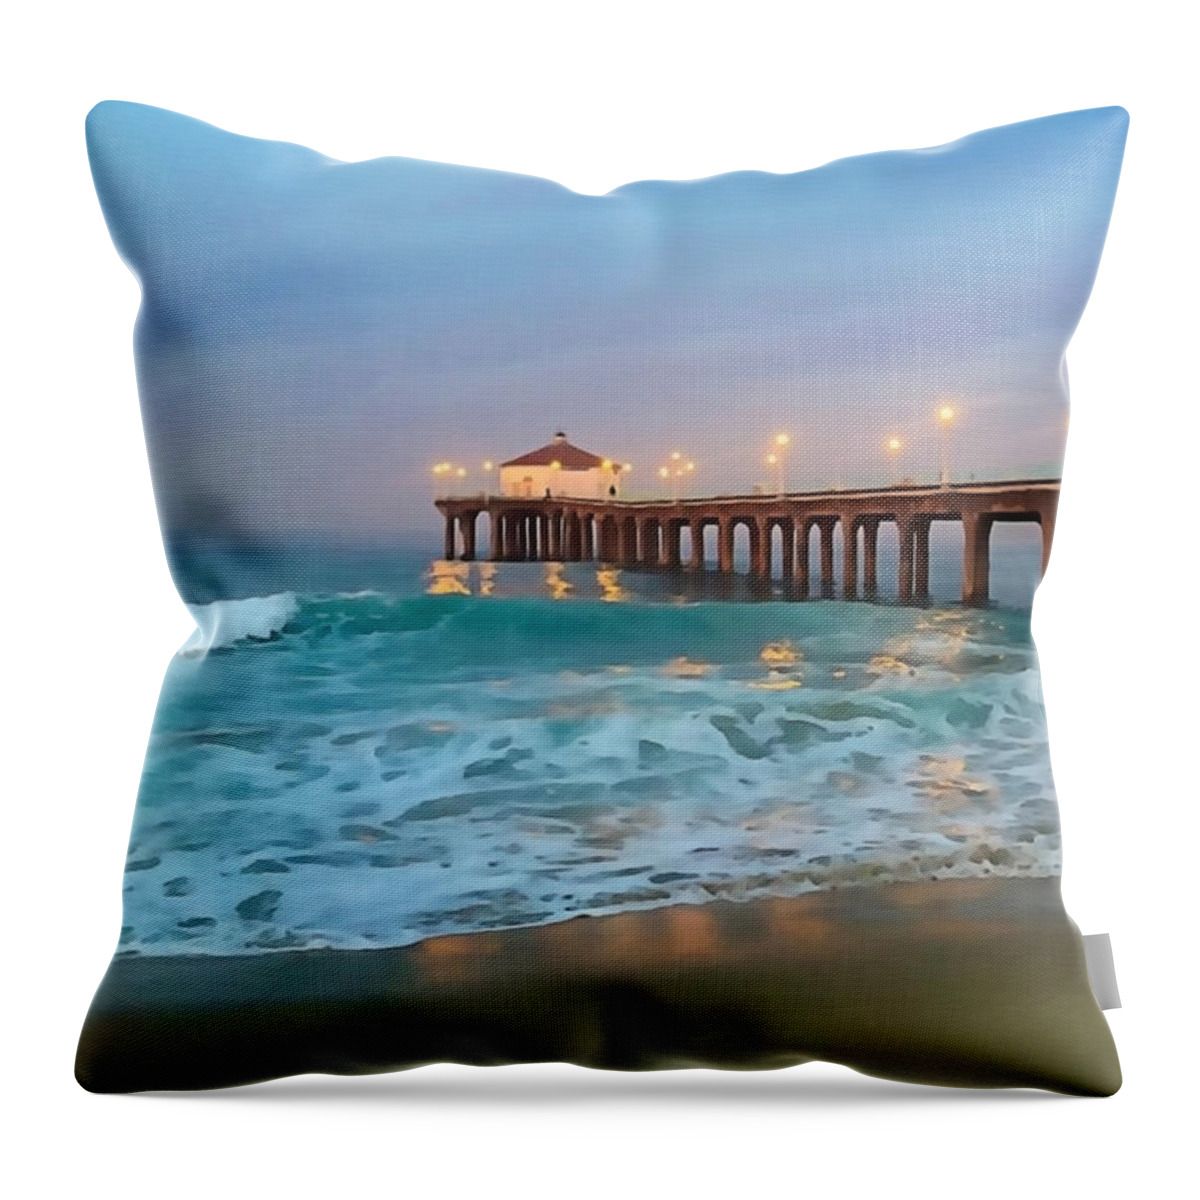 Manhattan Beach Throw Pillow featuring the photograph Manhattan Beach Reflections by Art Block Collections